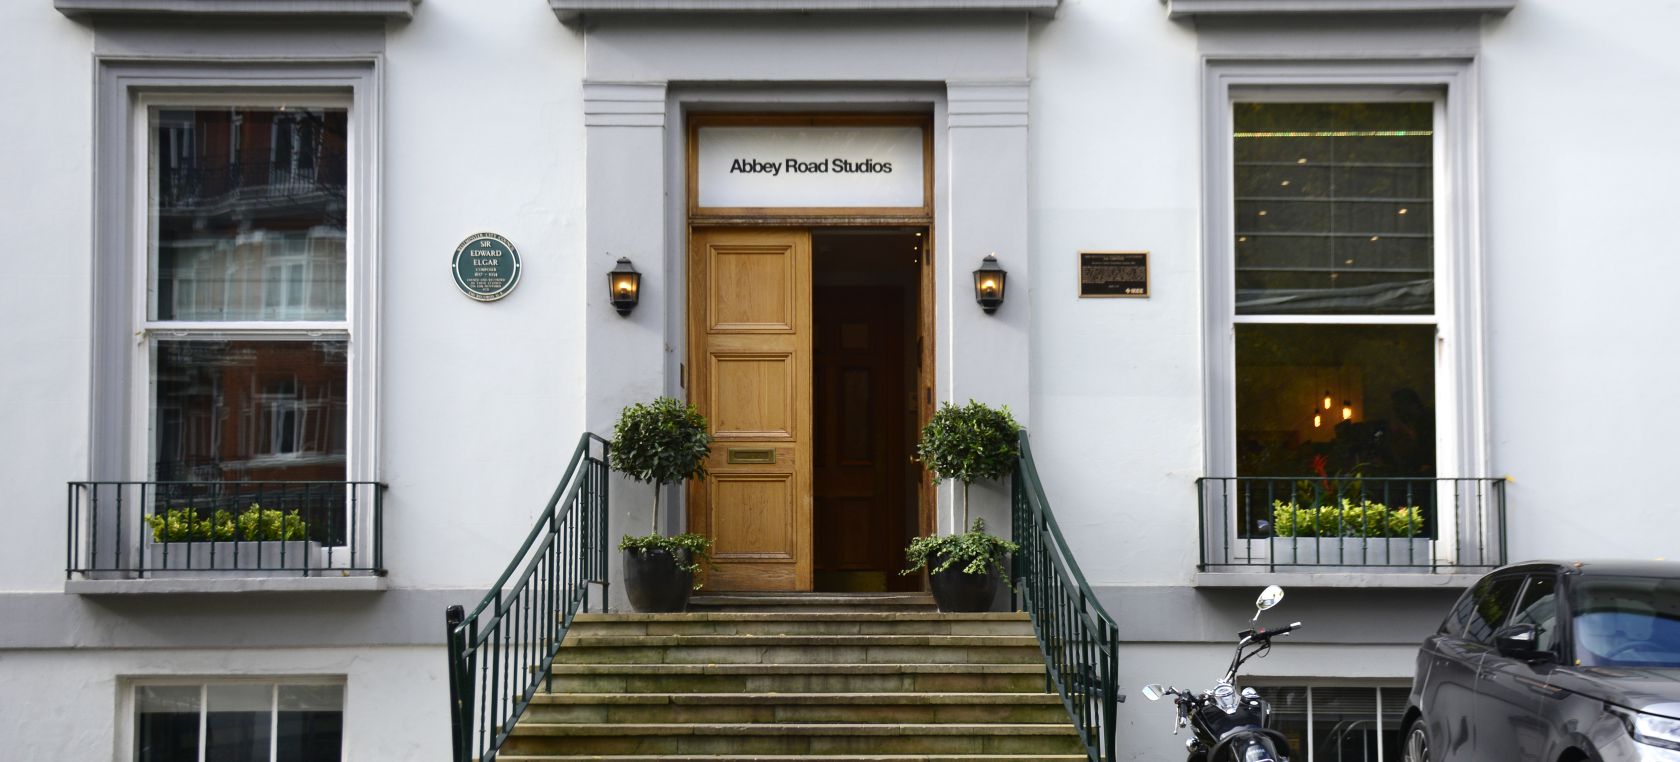 Los estudios de Abbey Road tendrán su propio documental dirigido por la hija de Paul McCartney